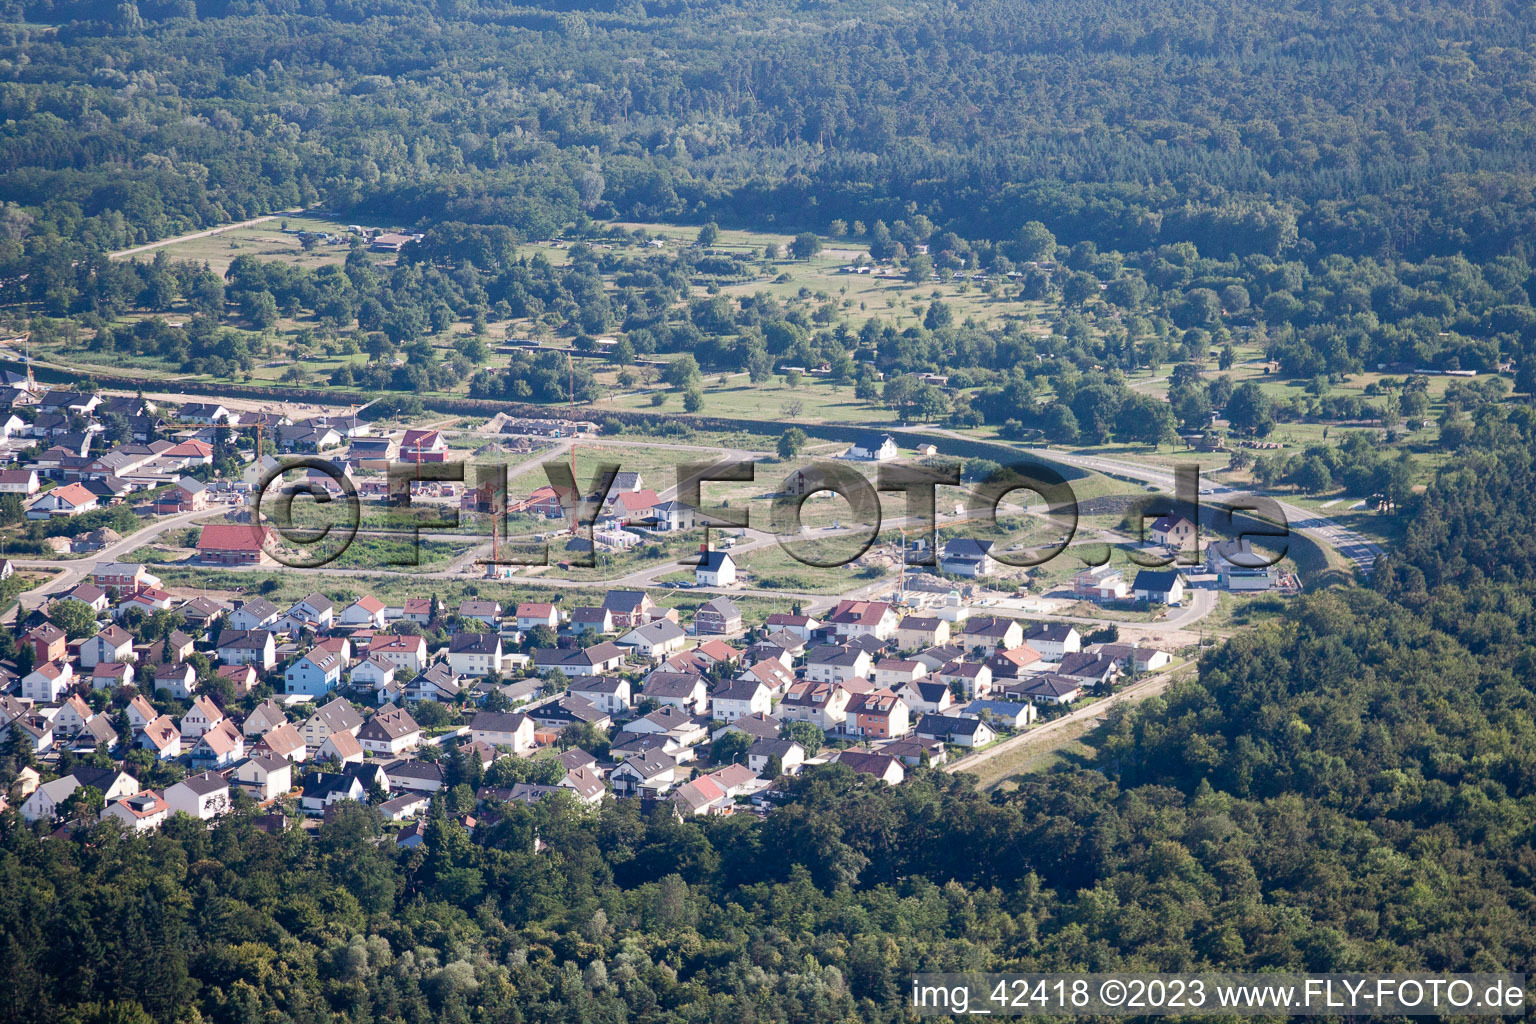 Photographie aérienne de Nouvelle zone de développement ouest à Jockgrim dans le département Rhénanie-Palatinat, Allemagne